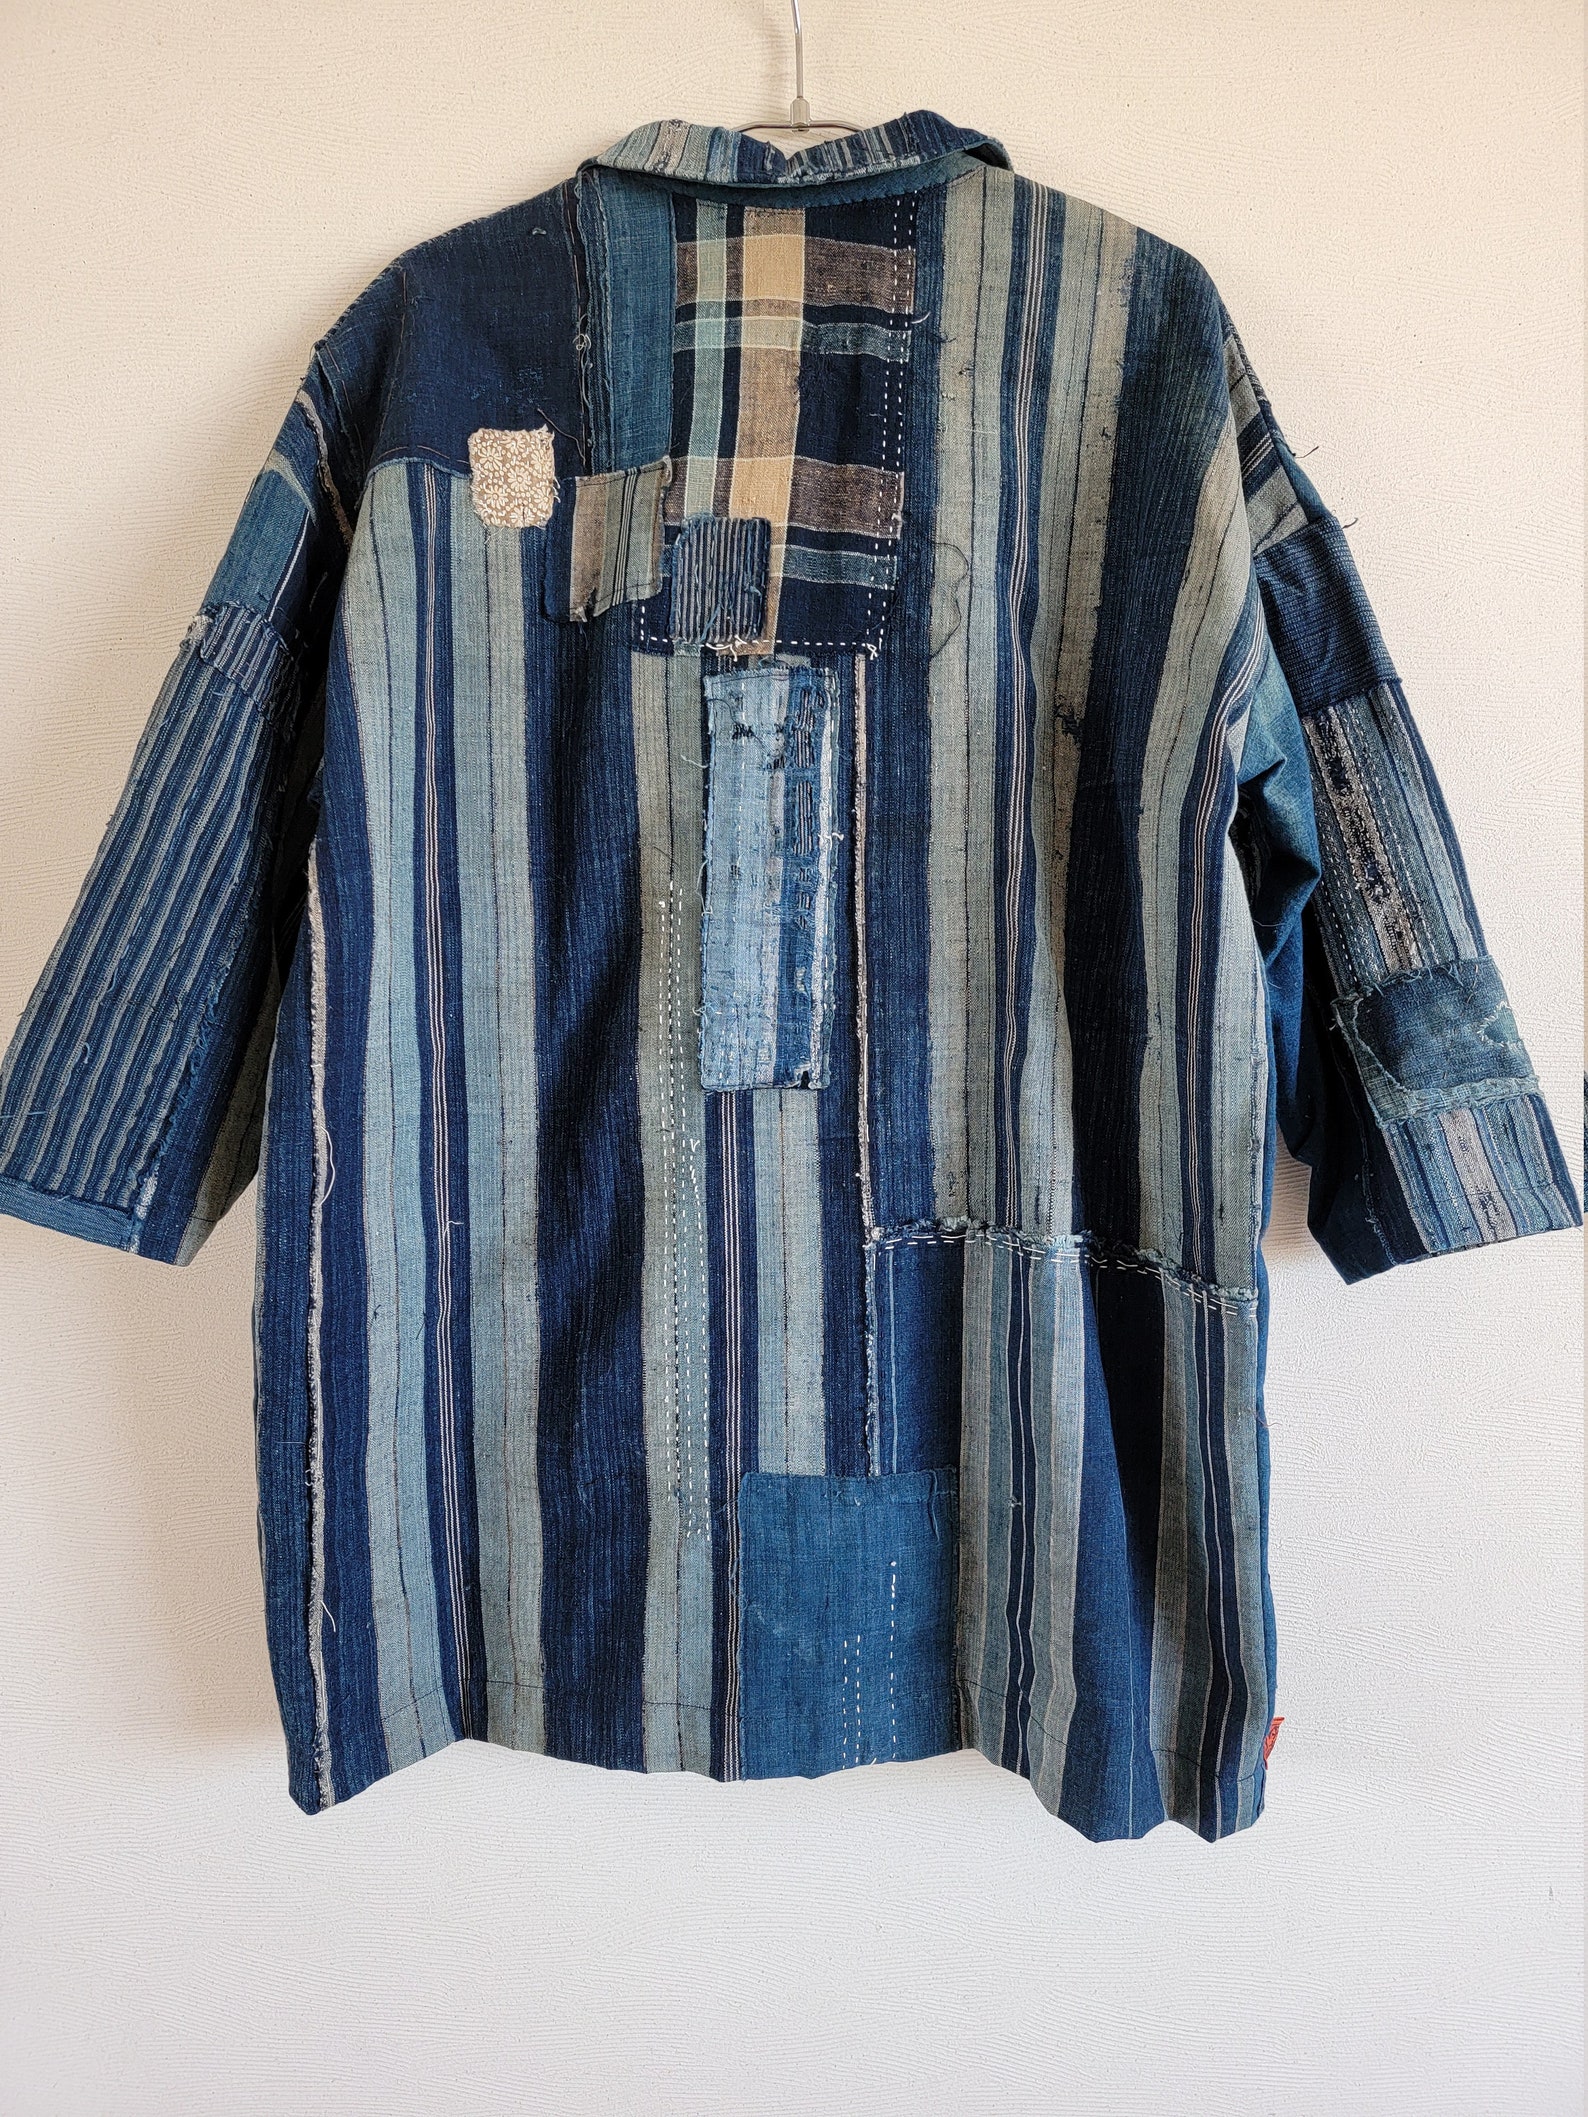 Vintage Japanese clothes remake handmade BORO BORO JACKET | Etsy